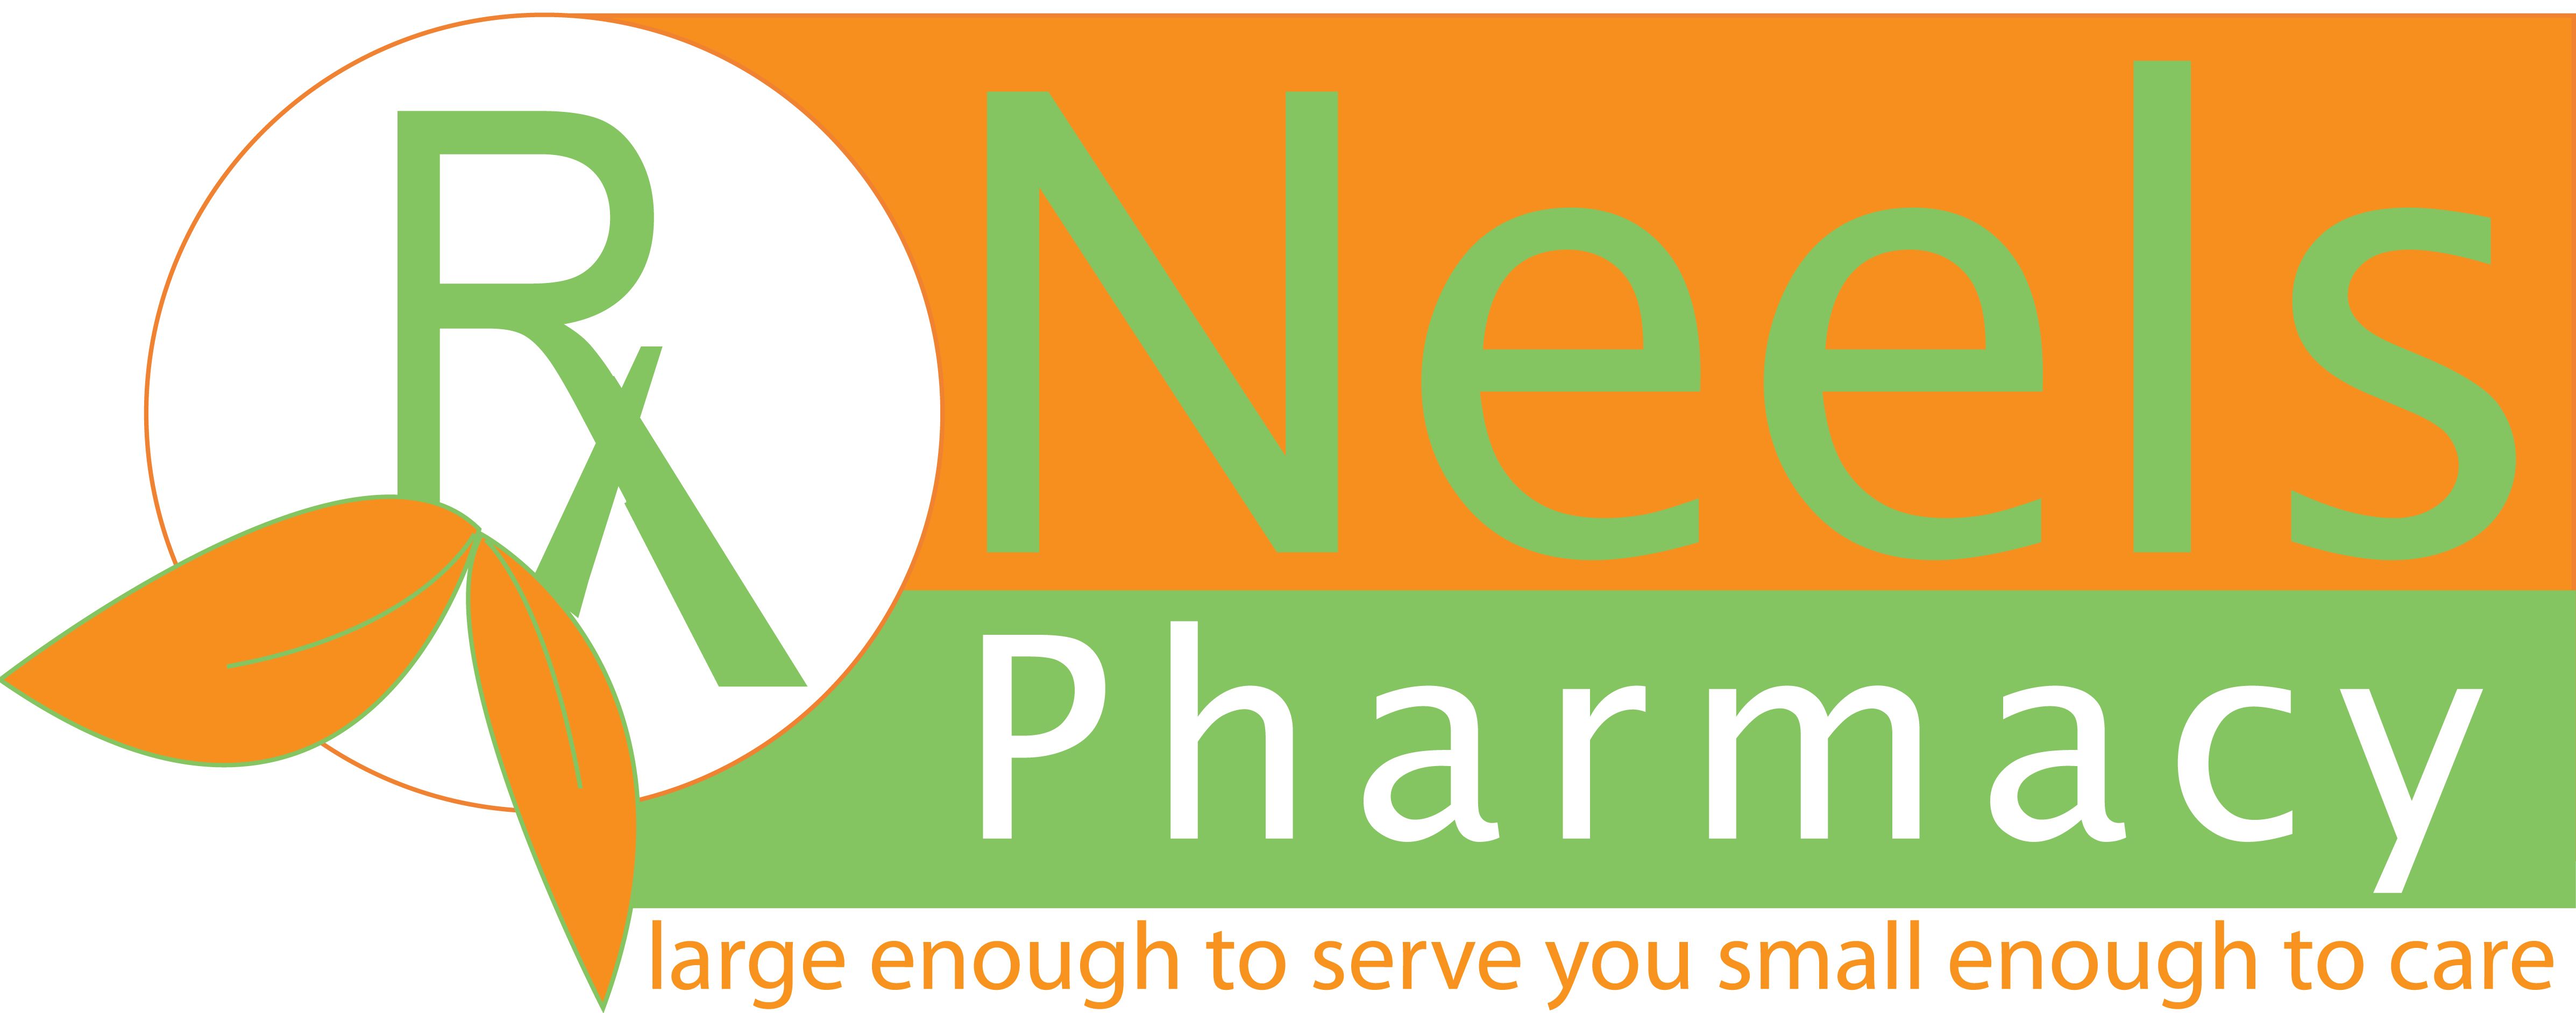 Neels Pharmacy